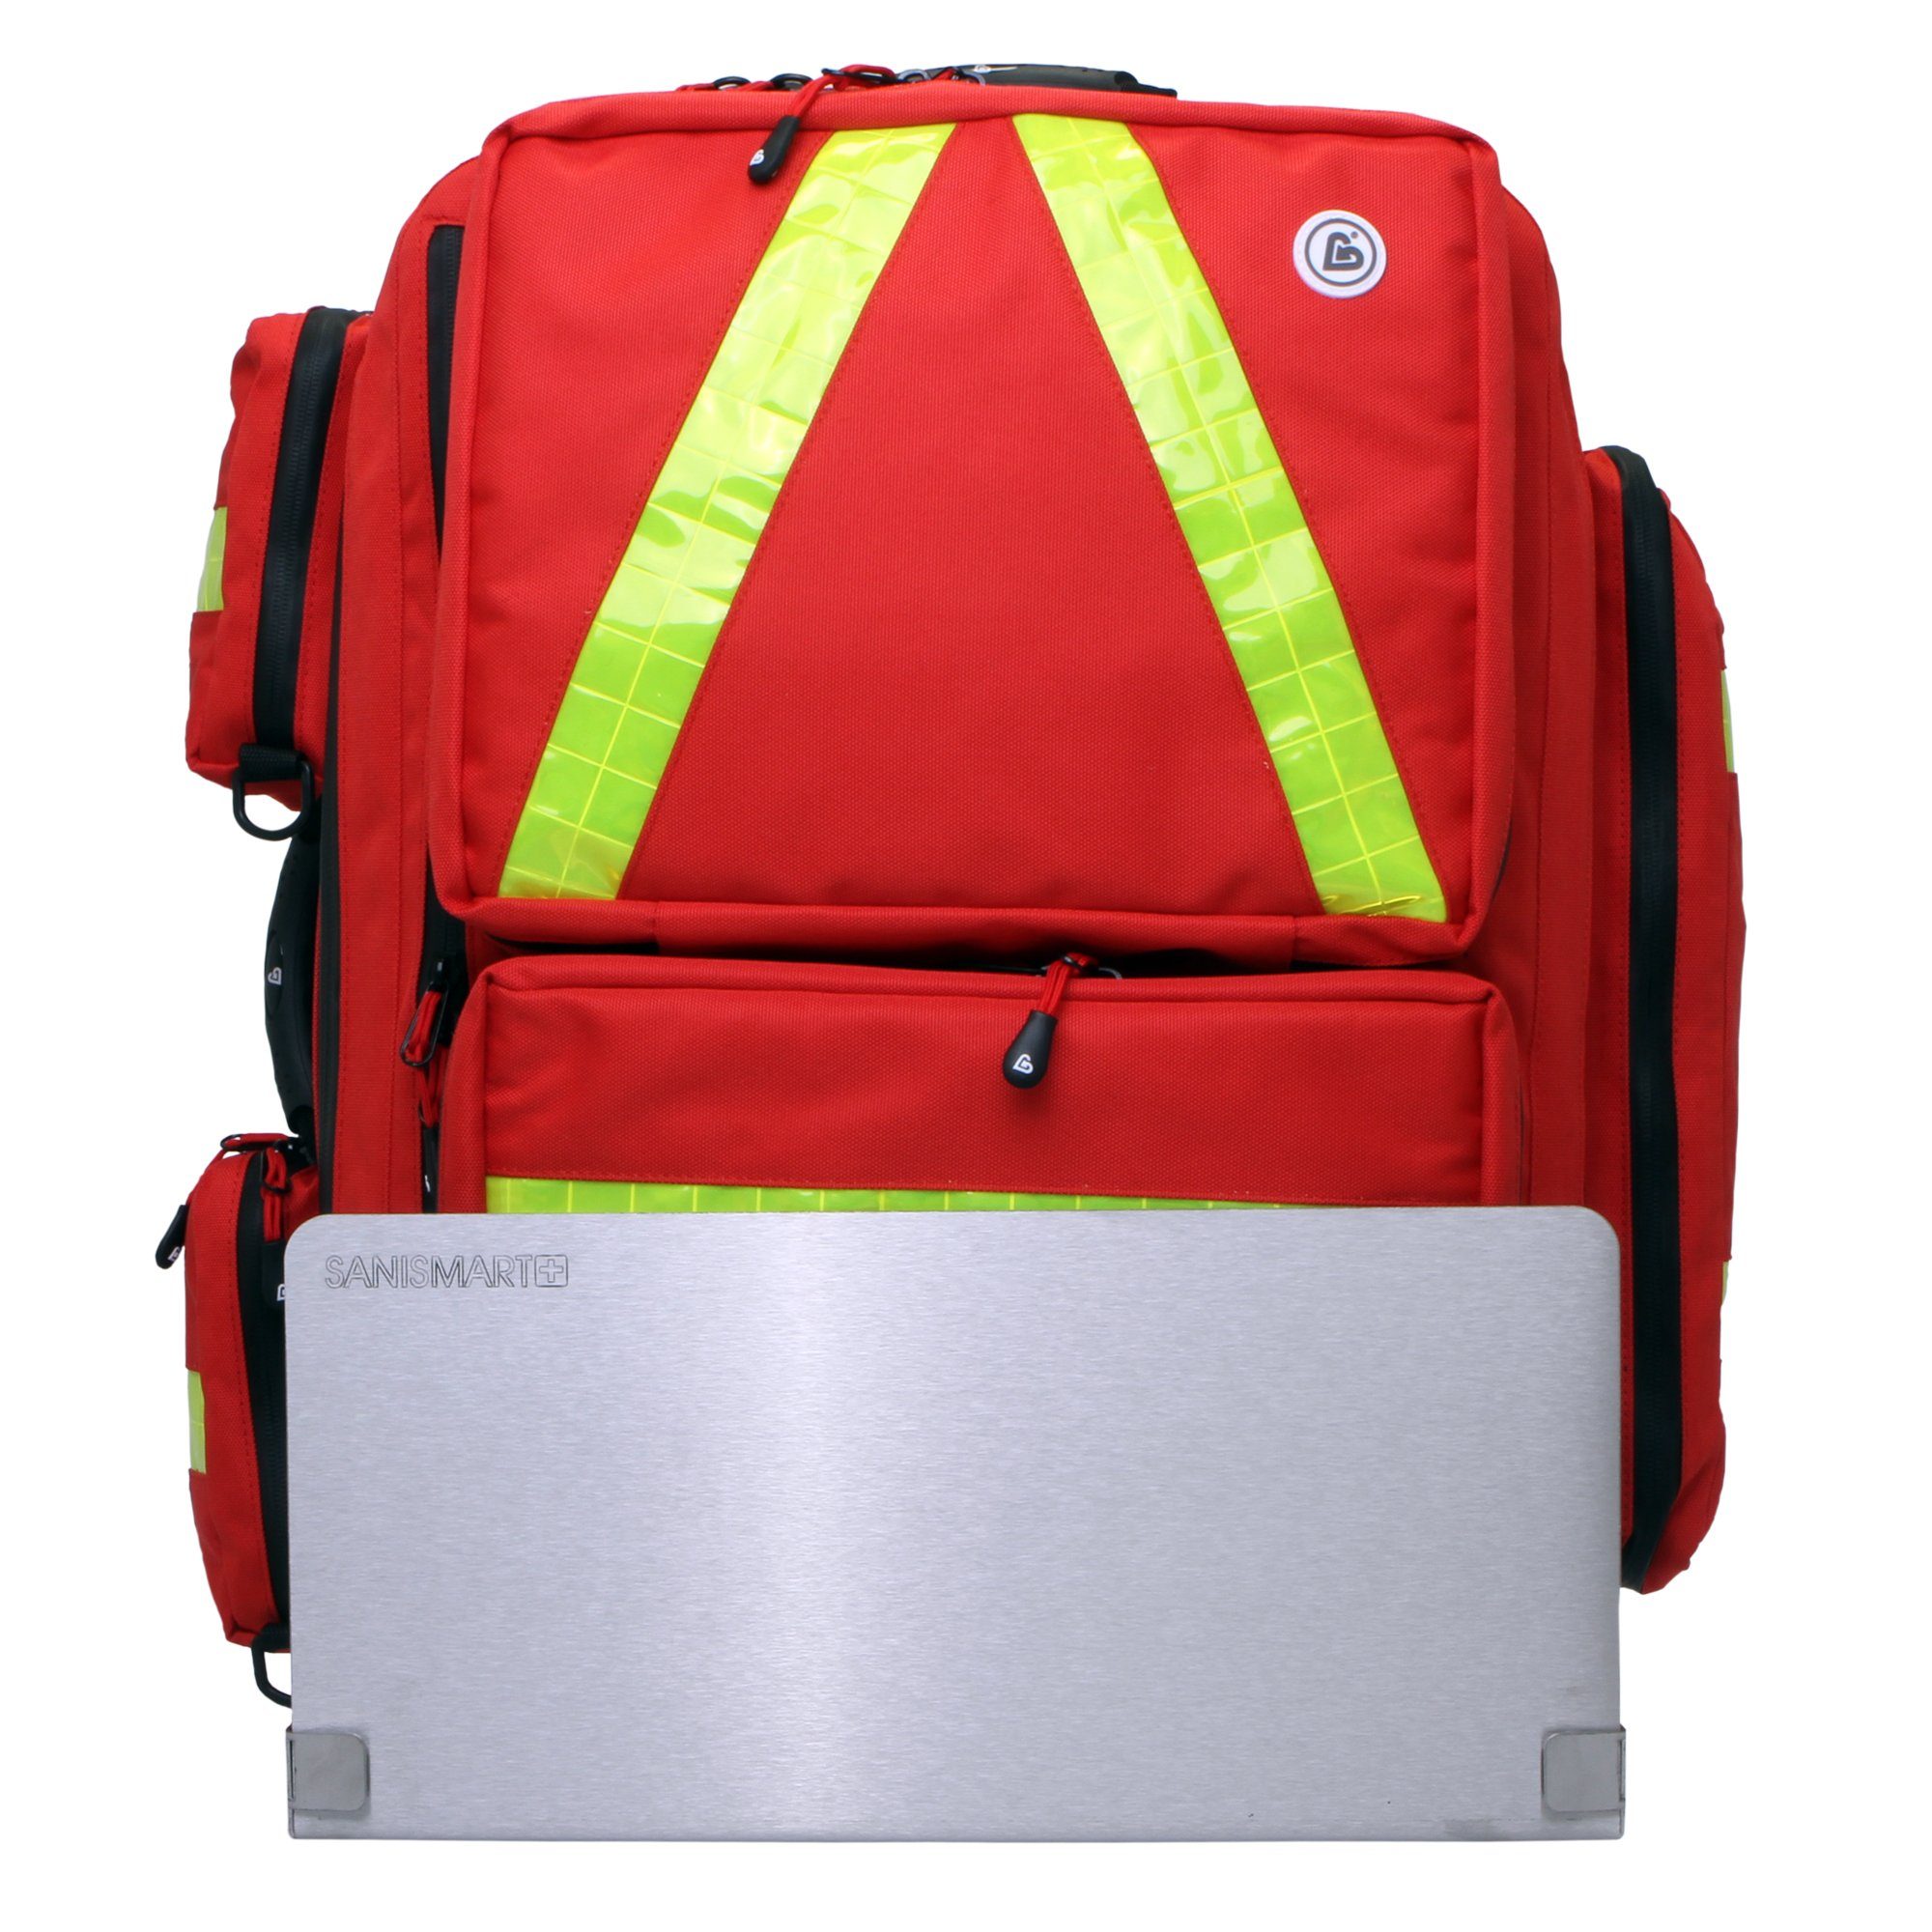 SANISMART Arzttasche Wandhalterung für Notfallrucksäcke mit Notfallrucksack Medicus XL Rot Nylon